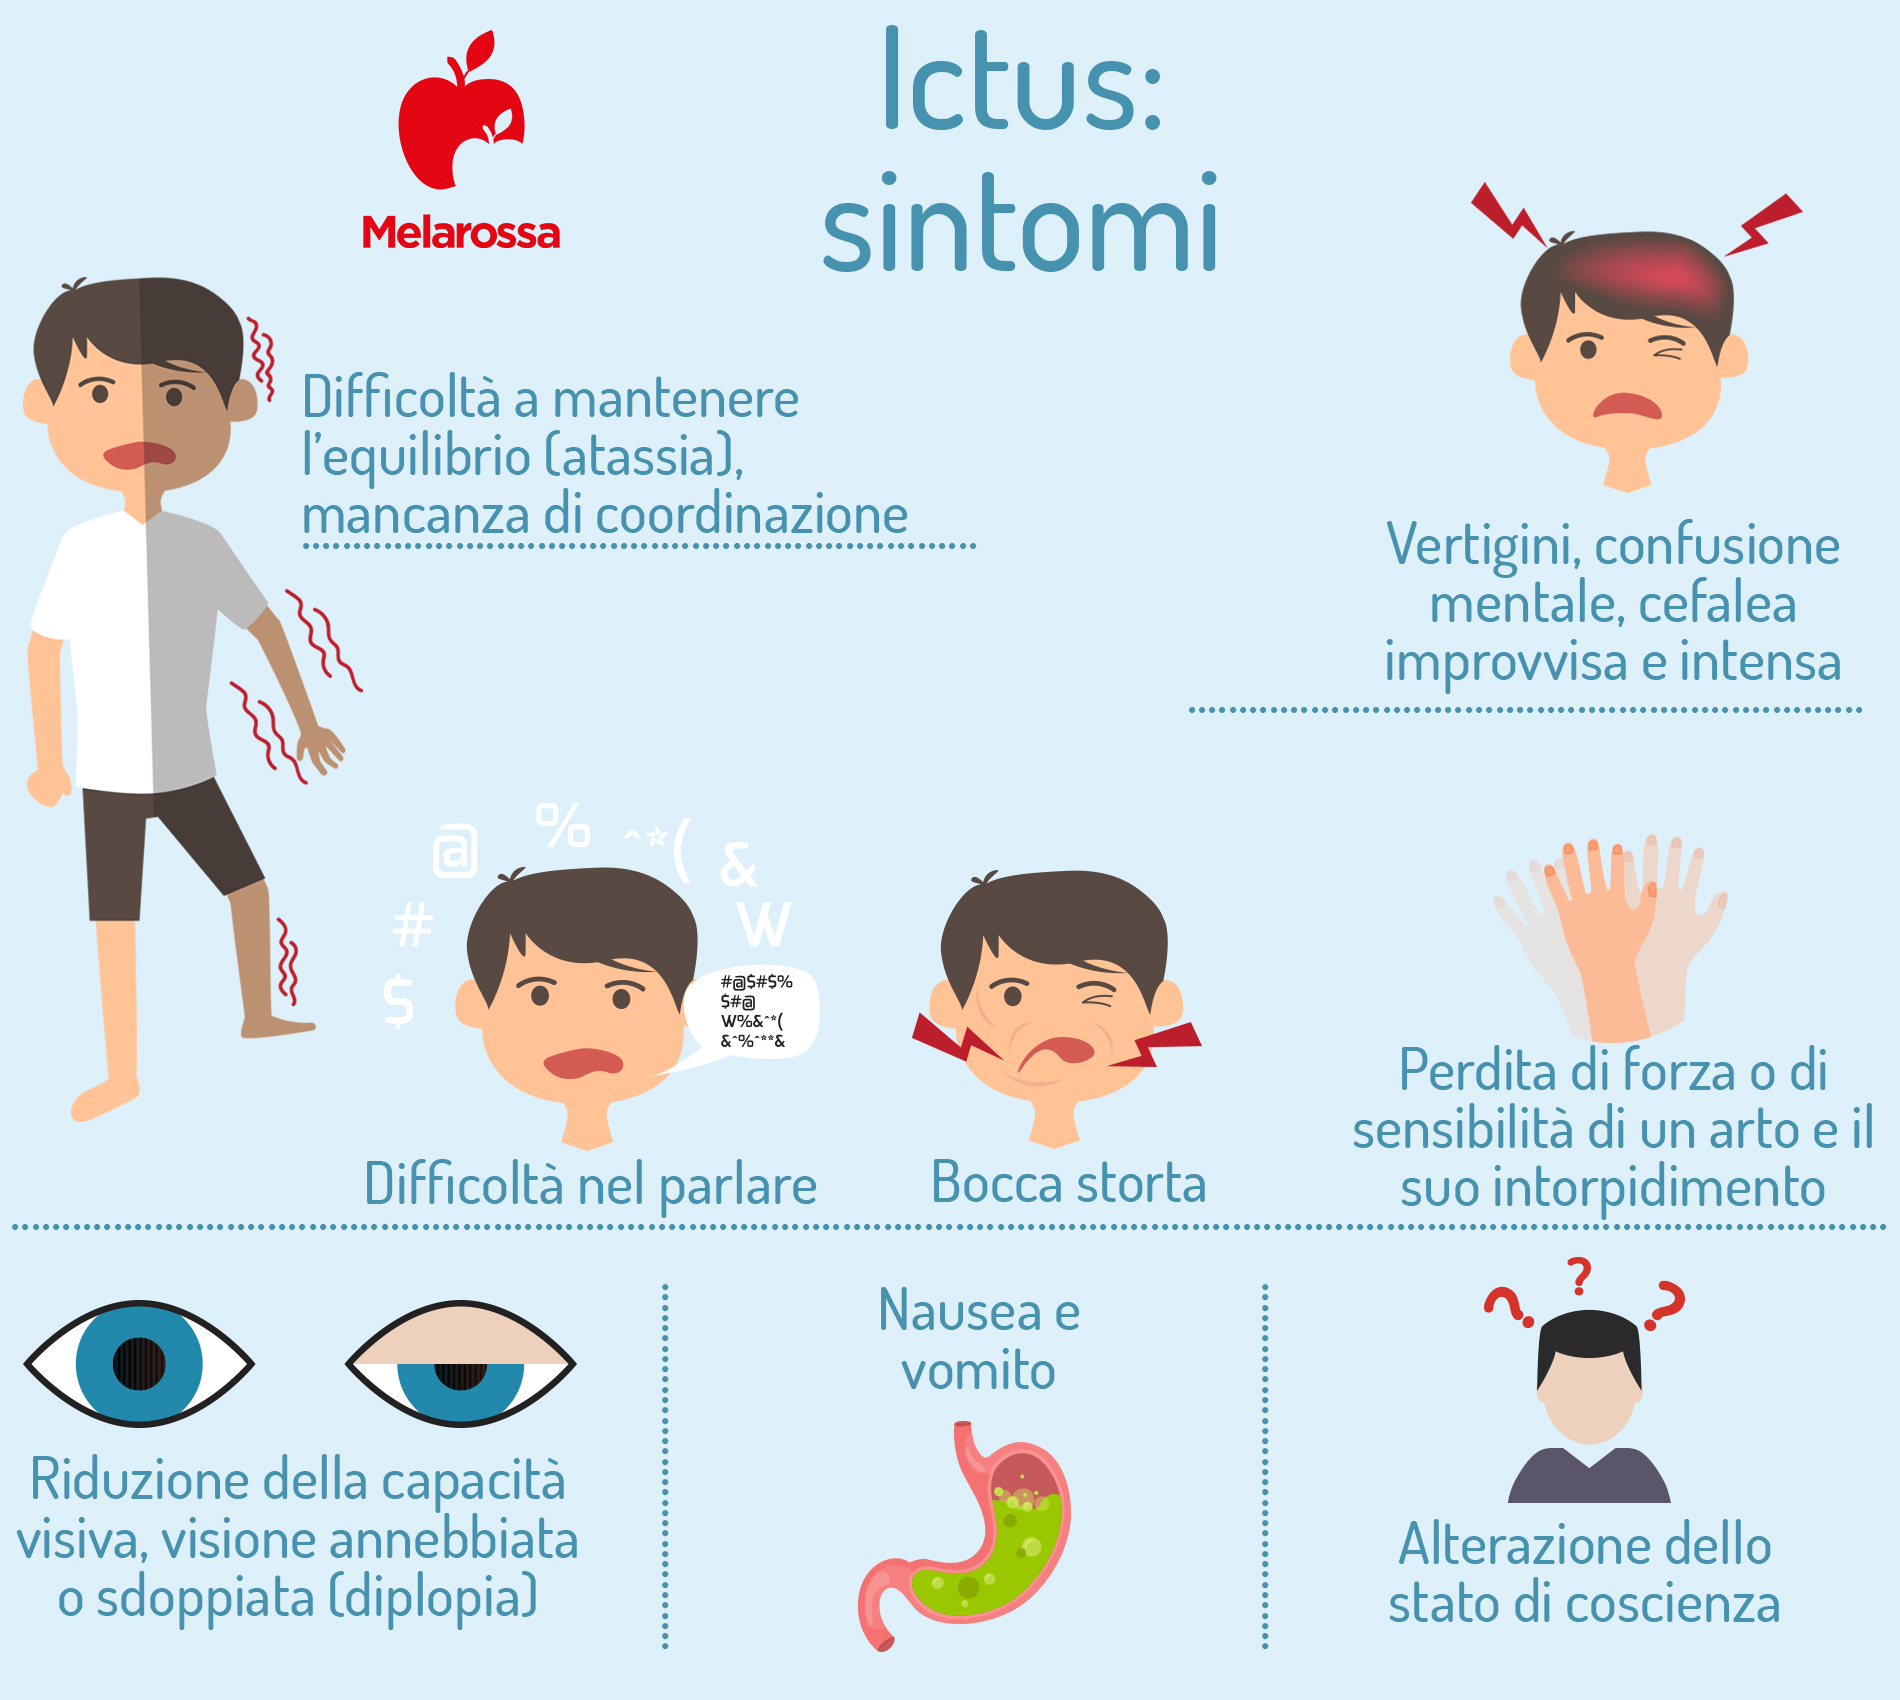 Ictus: sintomi 